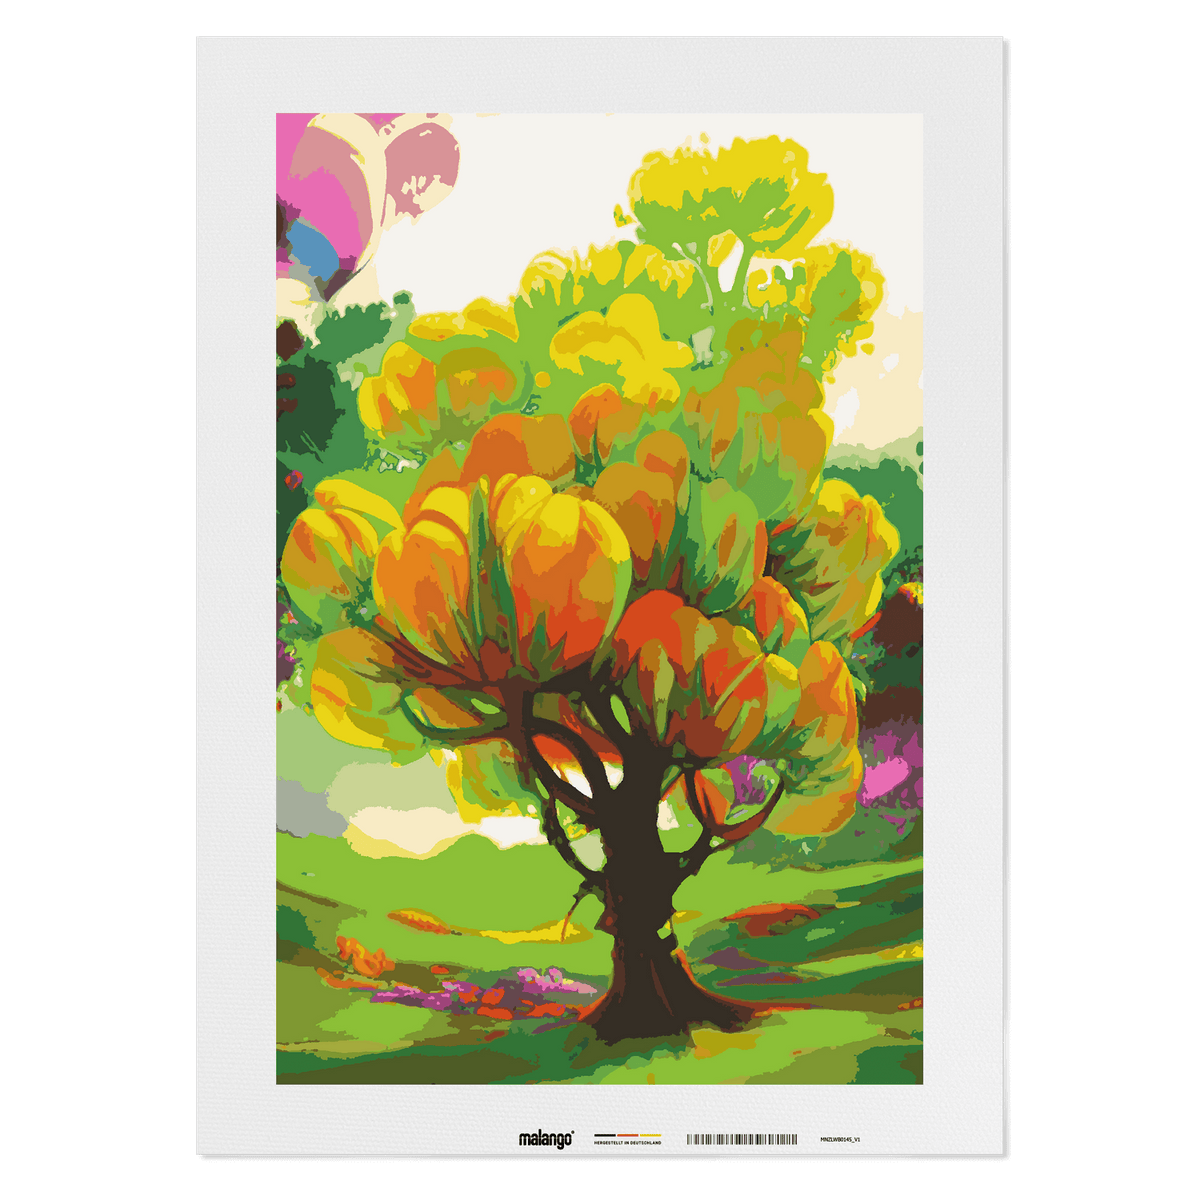 Malen nach Zahlen - Isabellas Blumenbaum